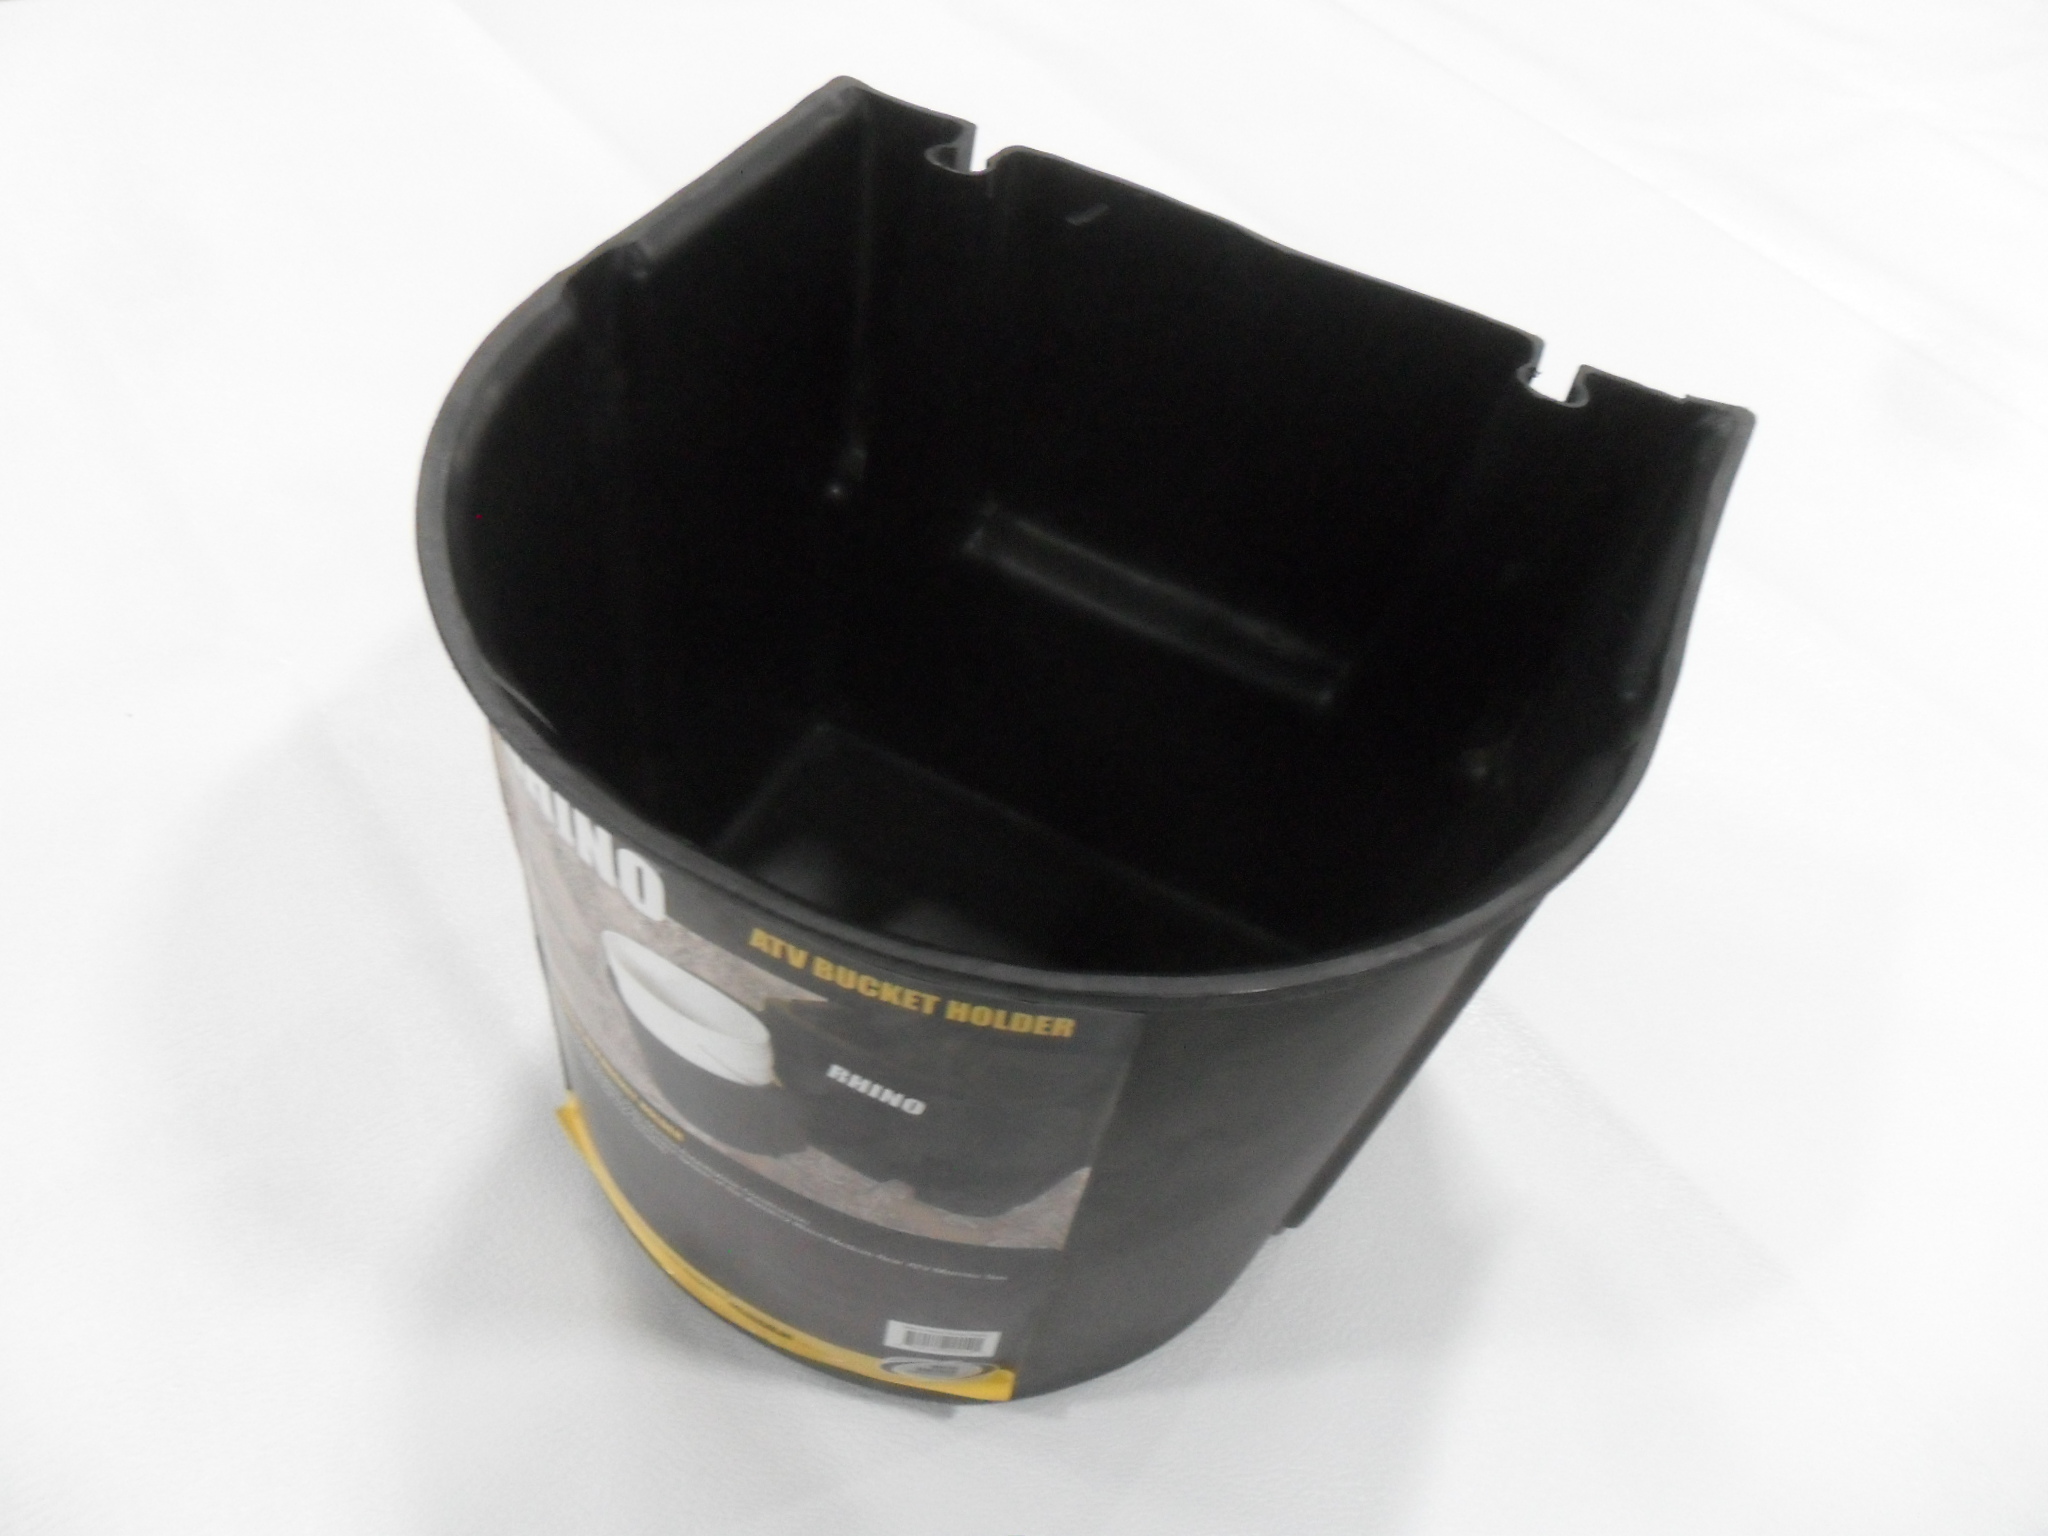 (4 Pack) E-track 5-gallon bucket holder